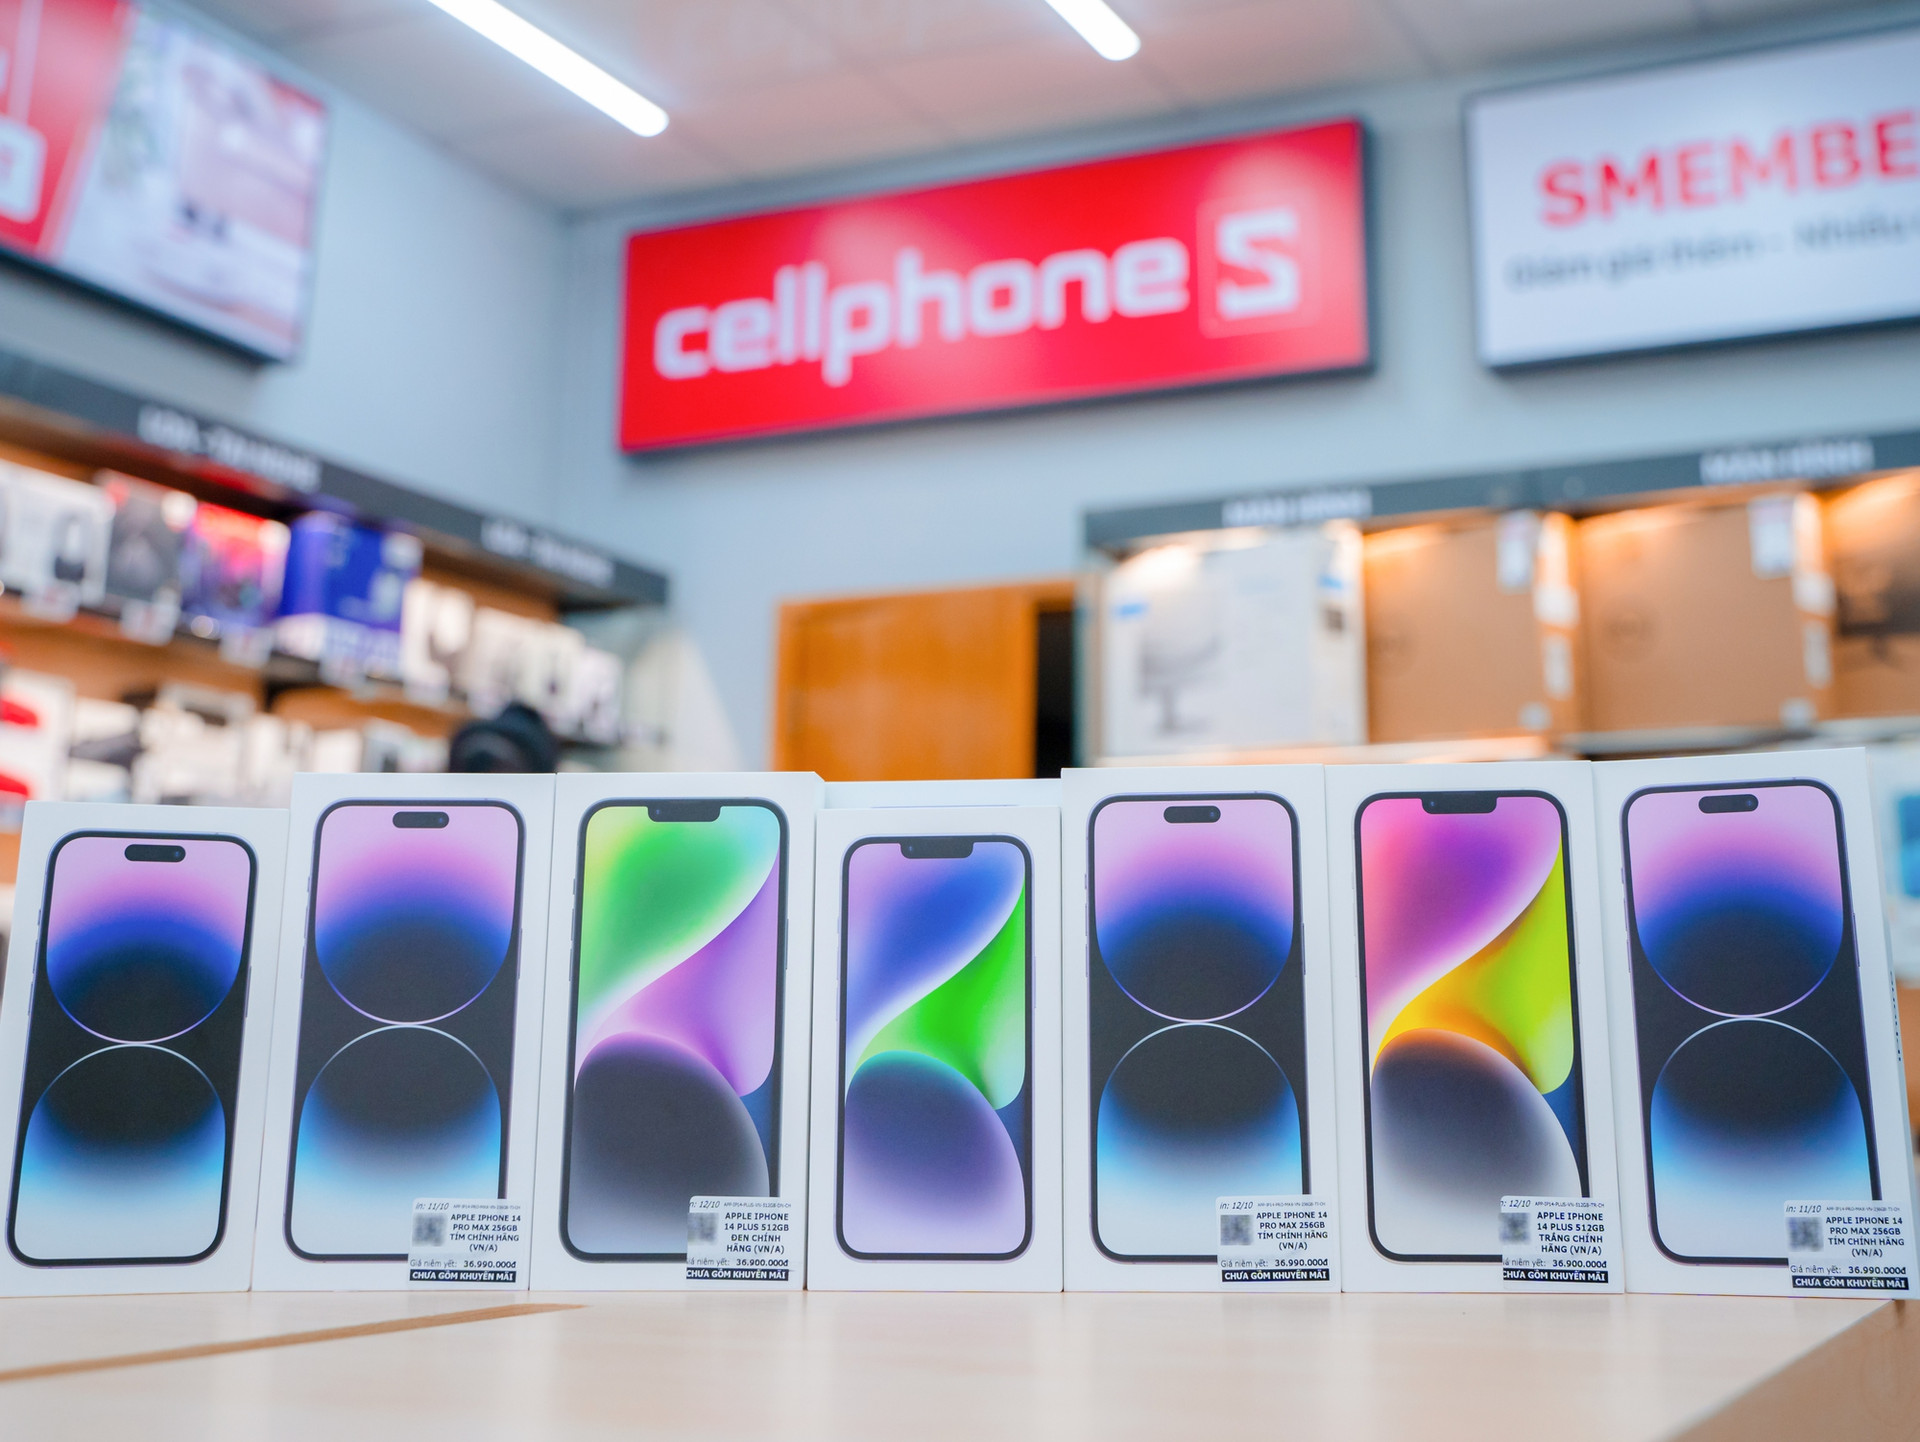 CellphoneS mở bán 15.000 khách hàng đặt trước iPhone 14 series chính hãng - Ảnh 3.